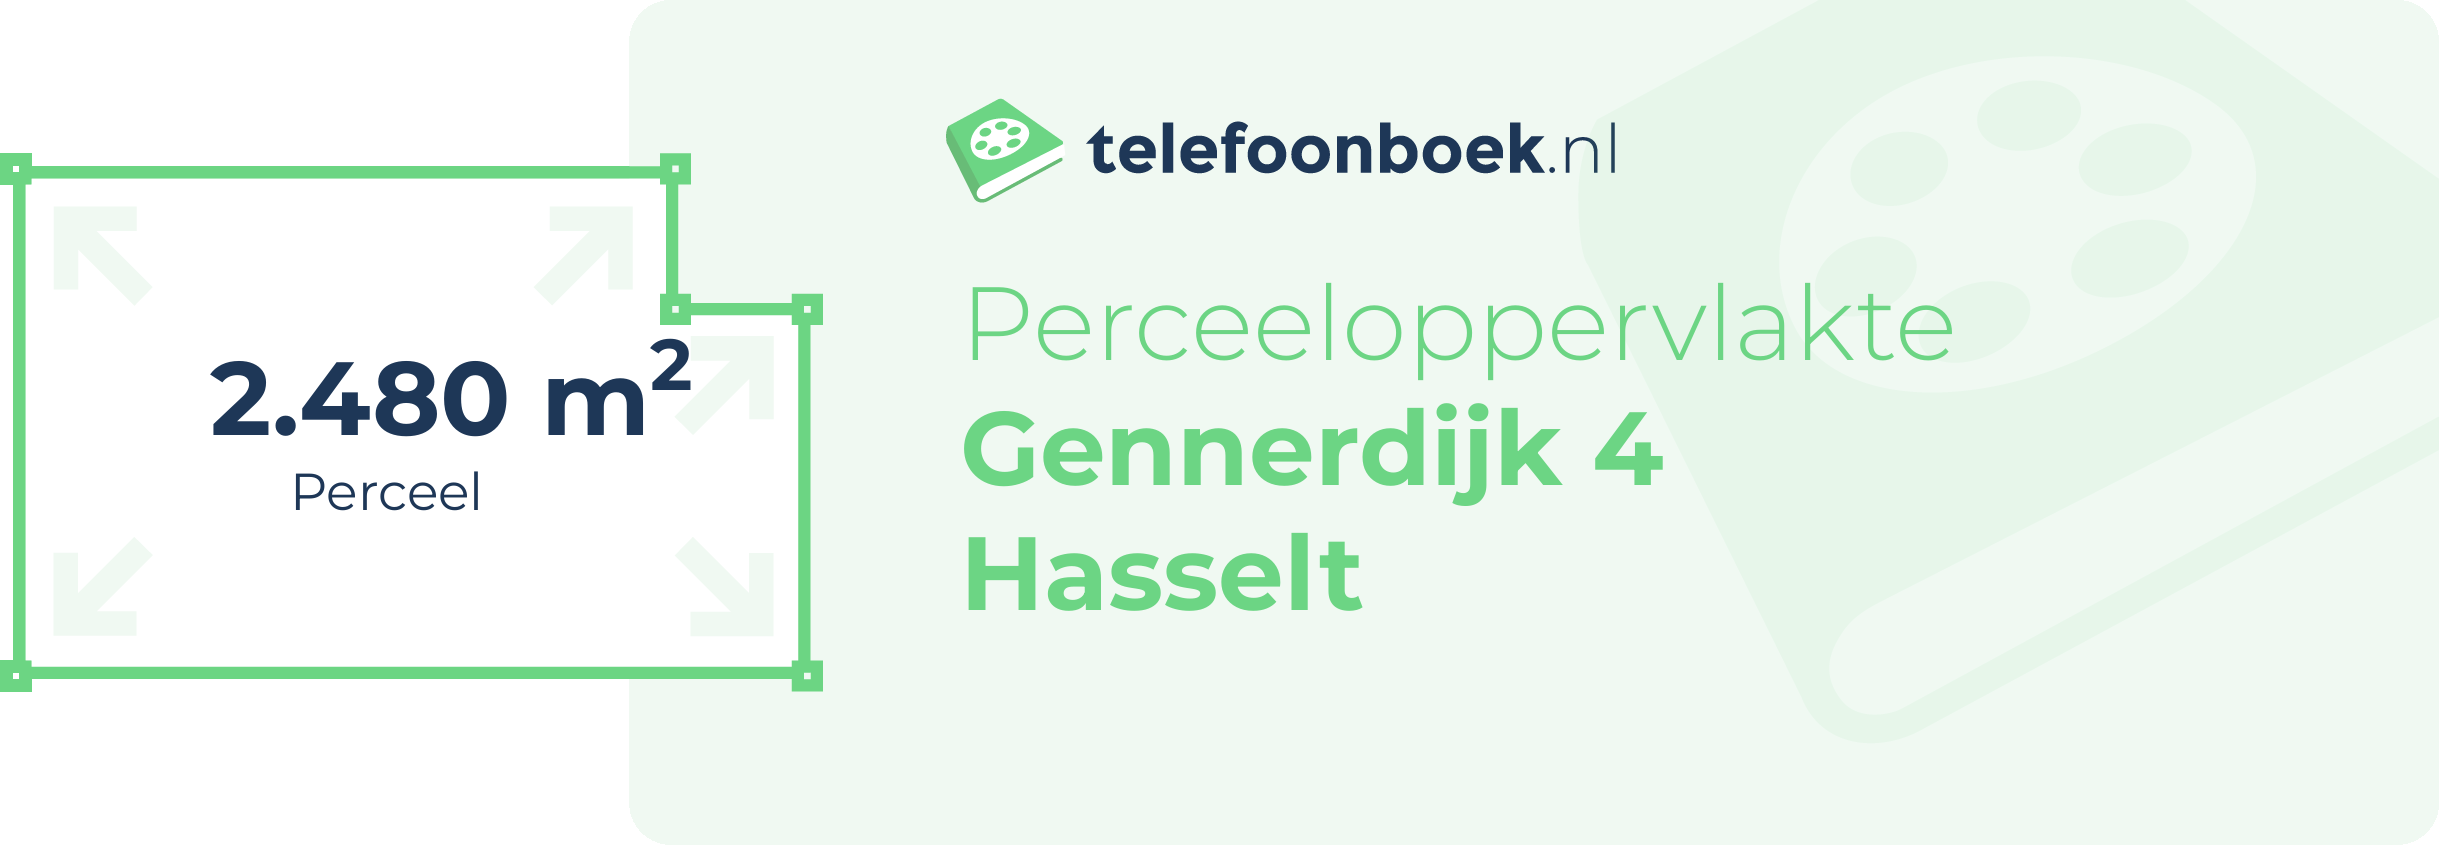 Perceeloppervlakte Gennerdijk 4 Hasselt